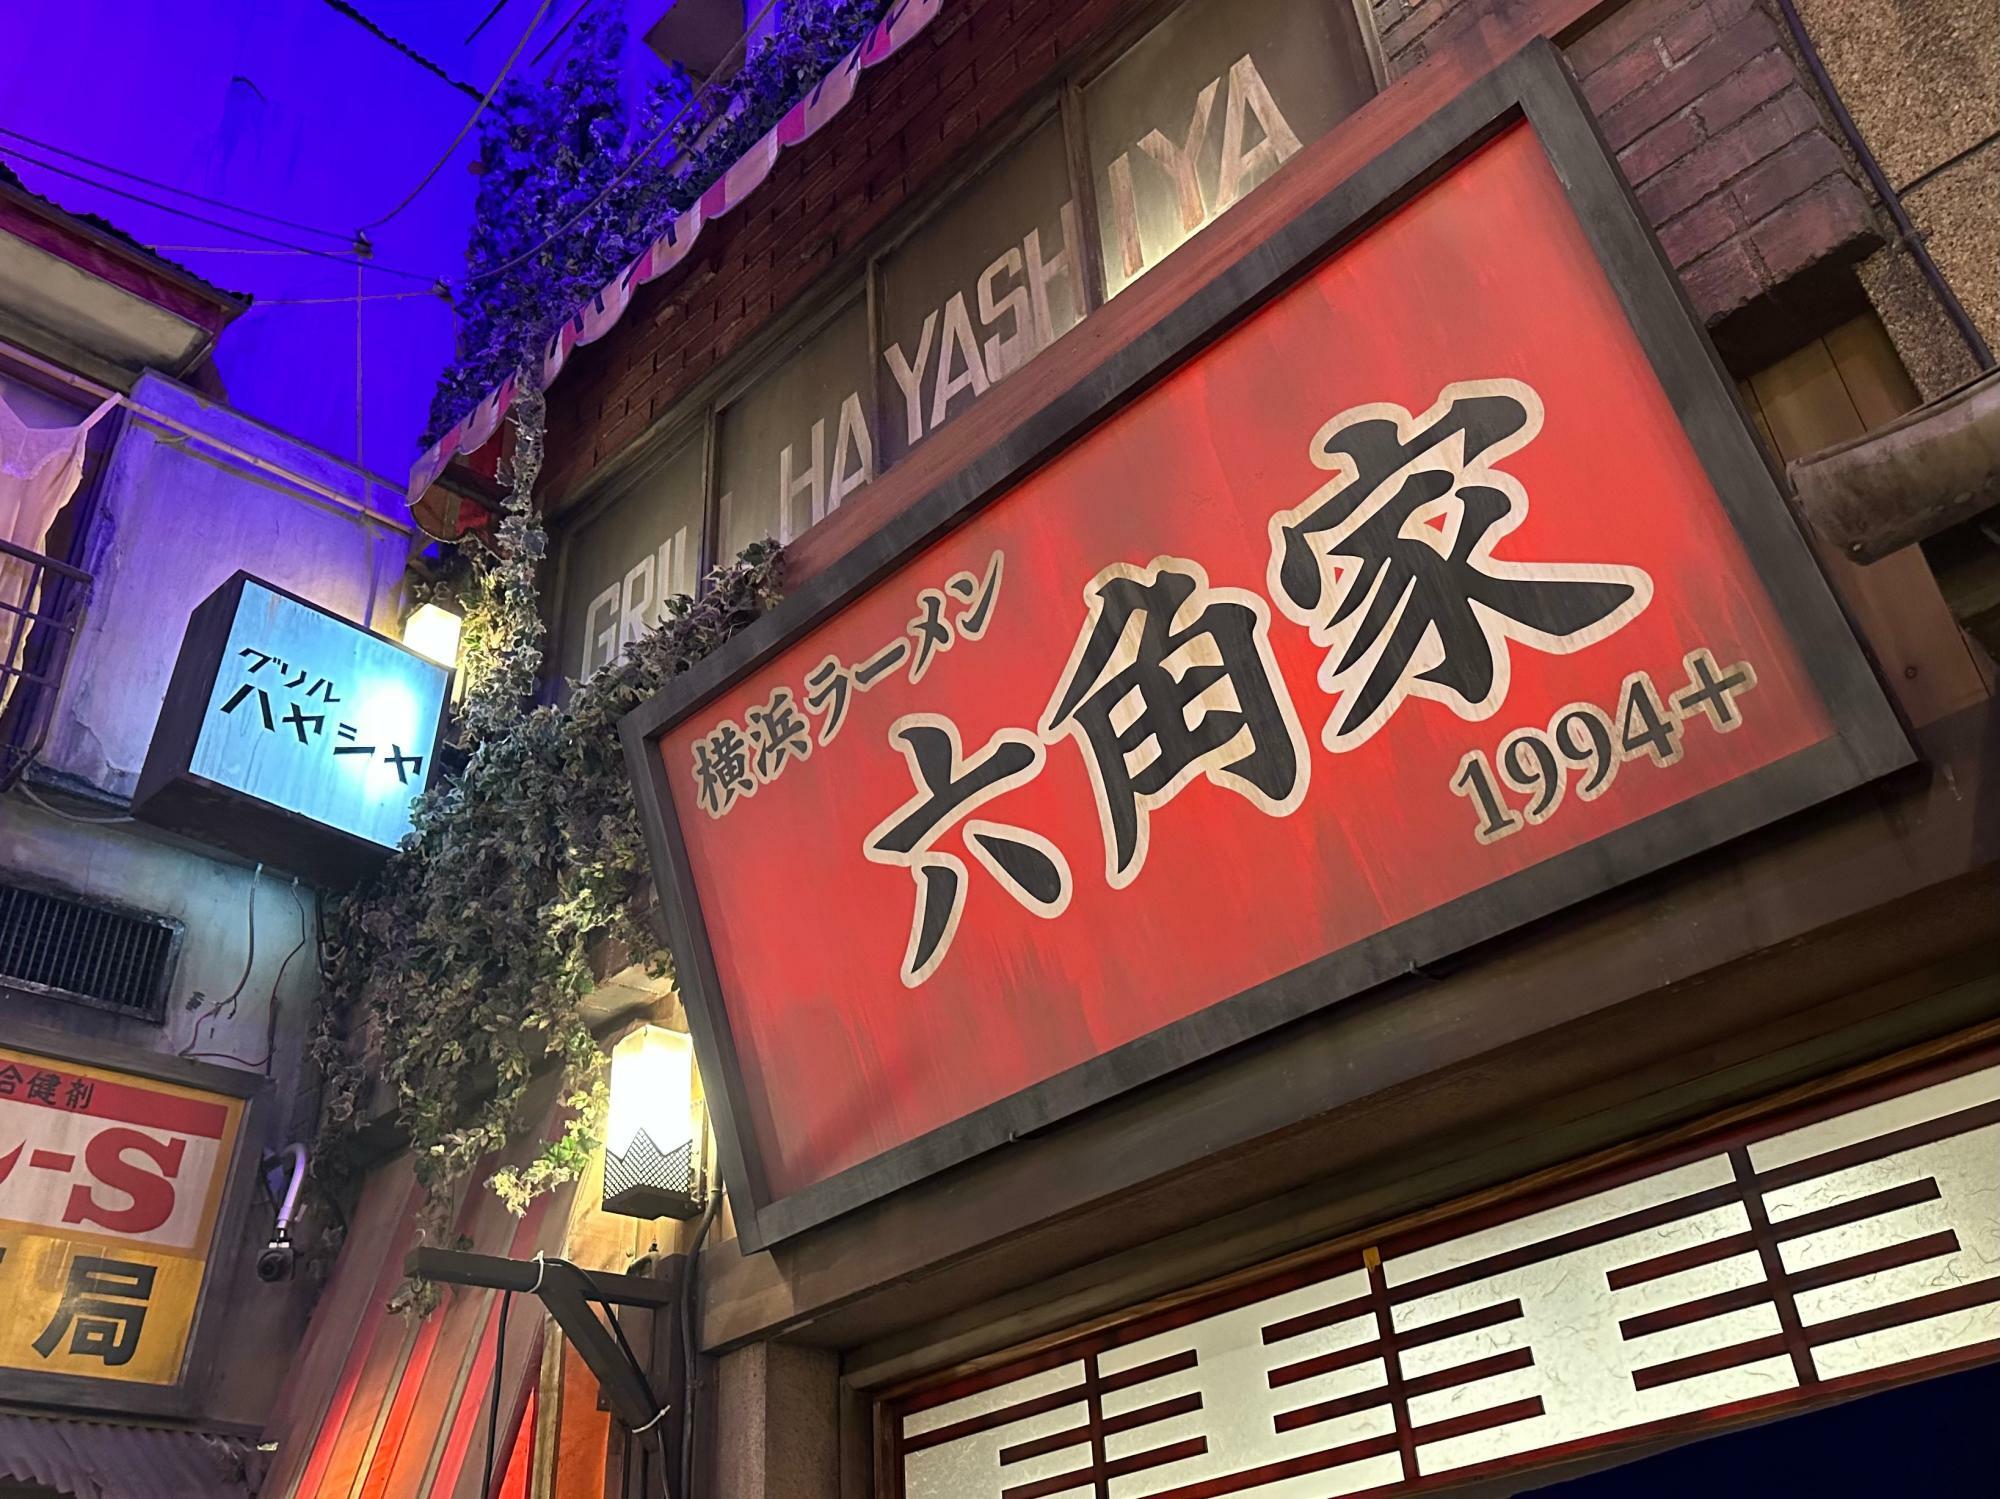 21年振りに新横浜ラーメン博物館へ復活出店を果たした『横浜ラーメン 六角家1994＋』。